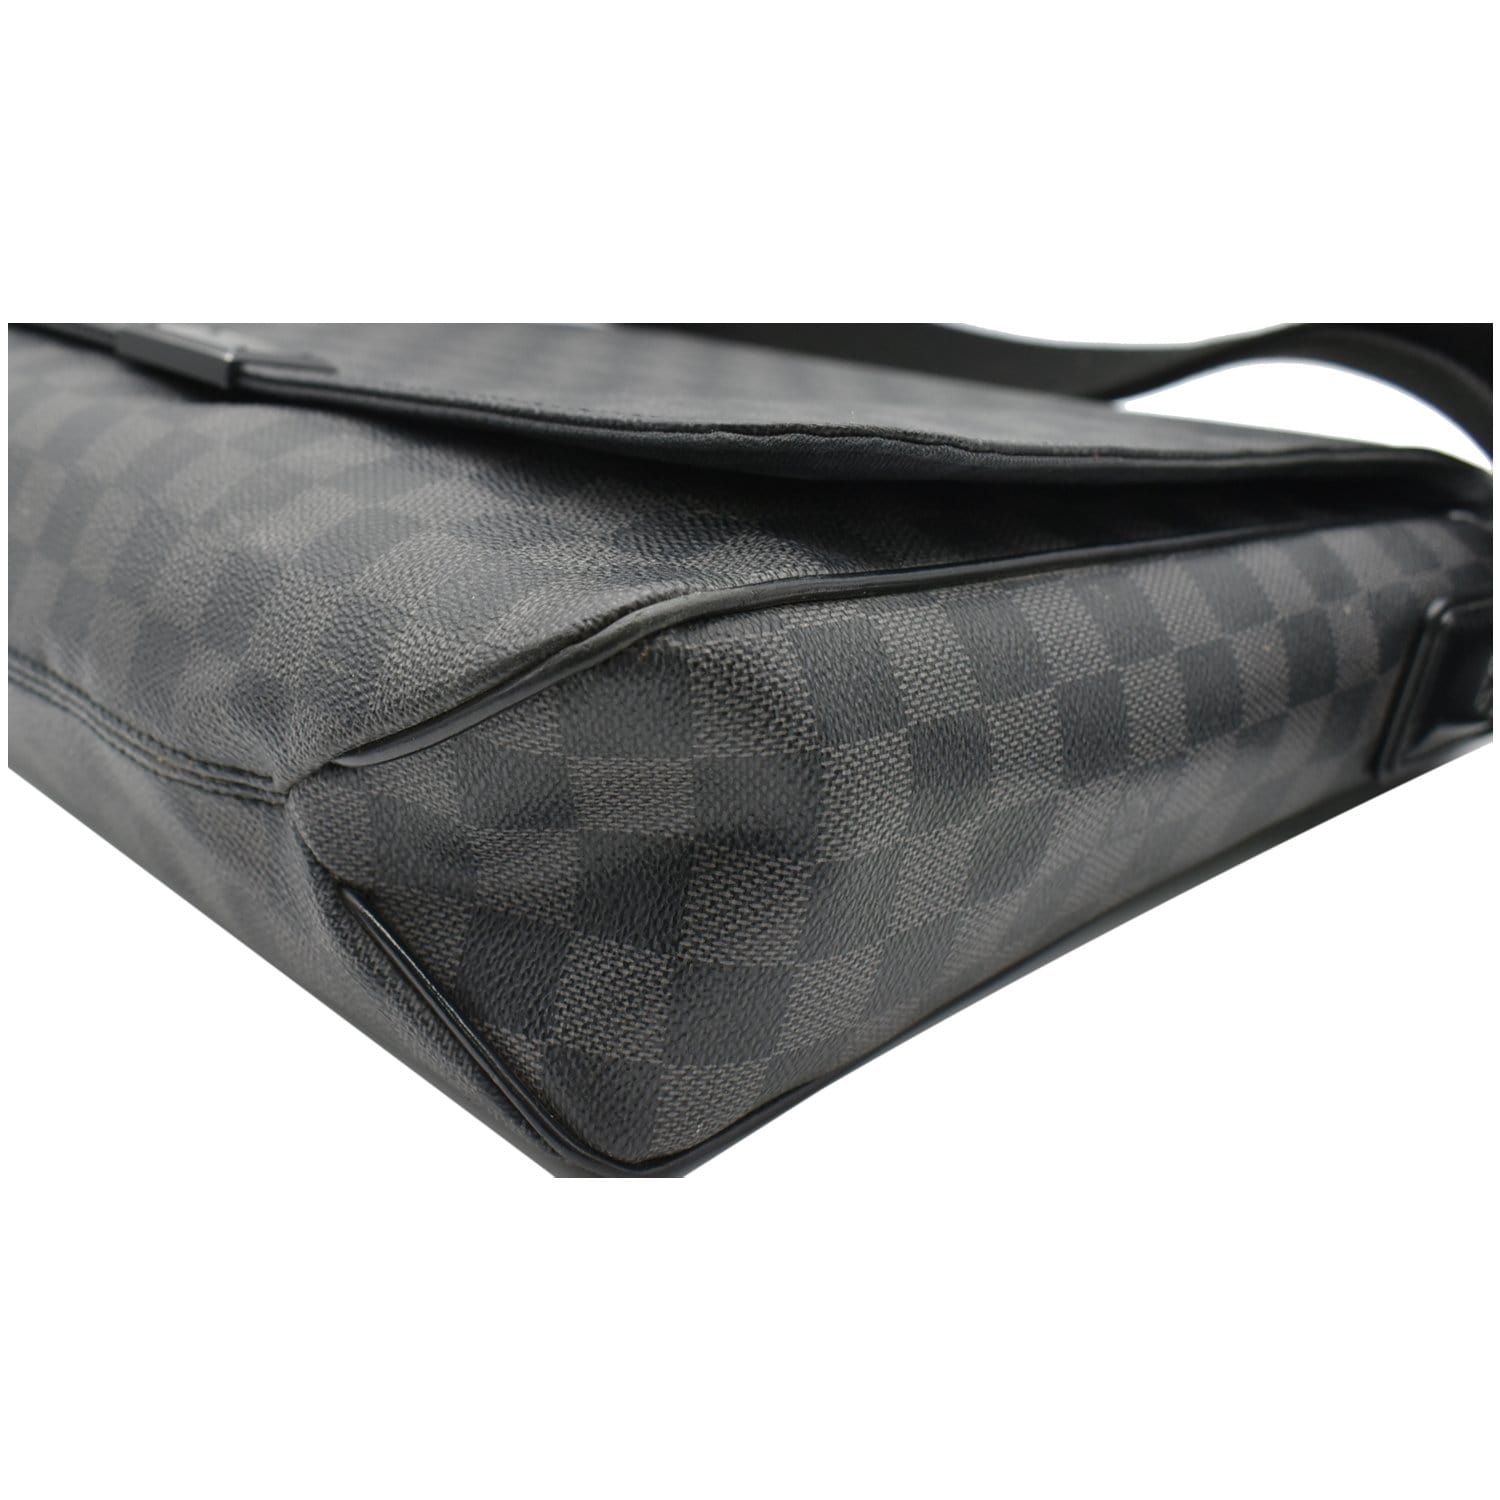 Louis Vuitton Damier Graphite District GM Messenger Bag - The Purse Ladies